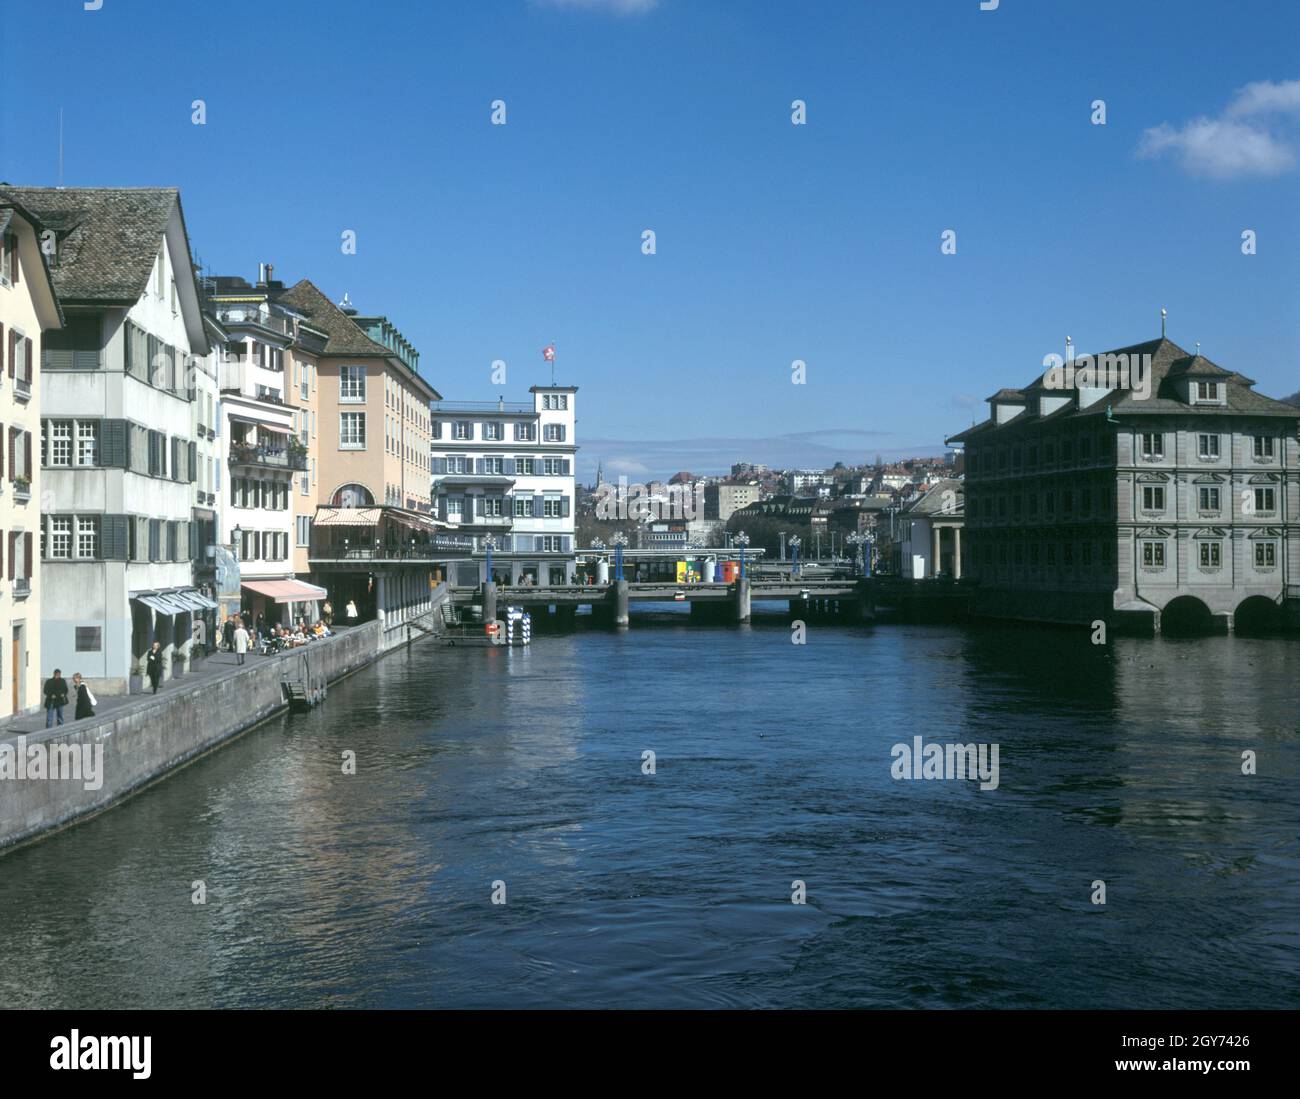 The Limmat River in Zurich Switzerland Stock Photo